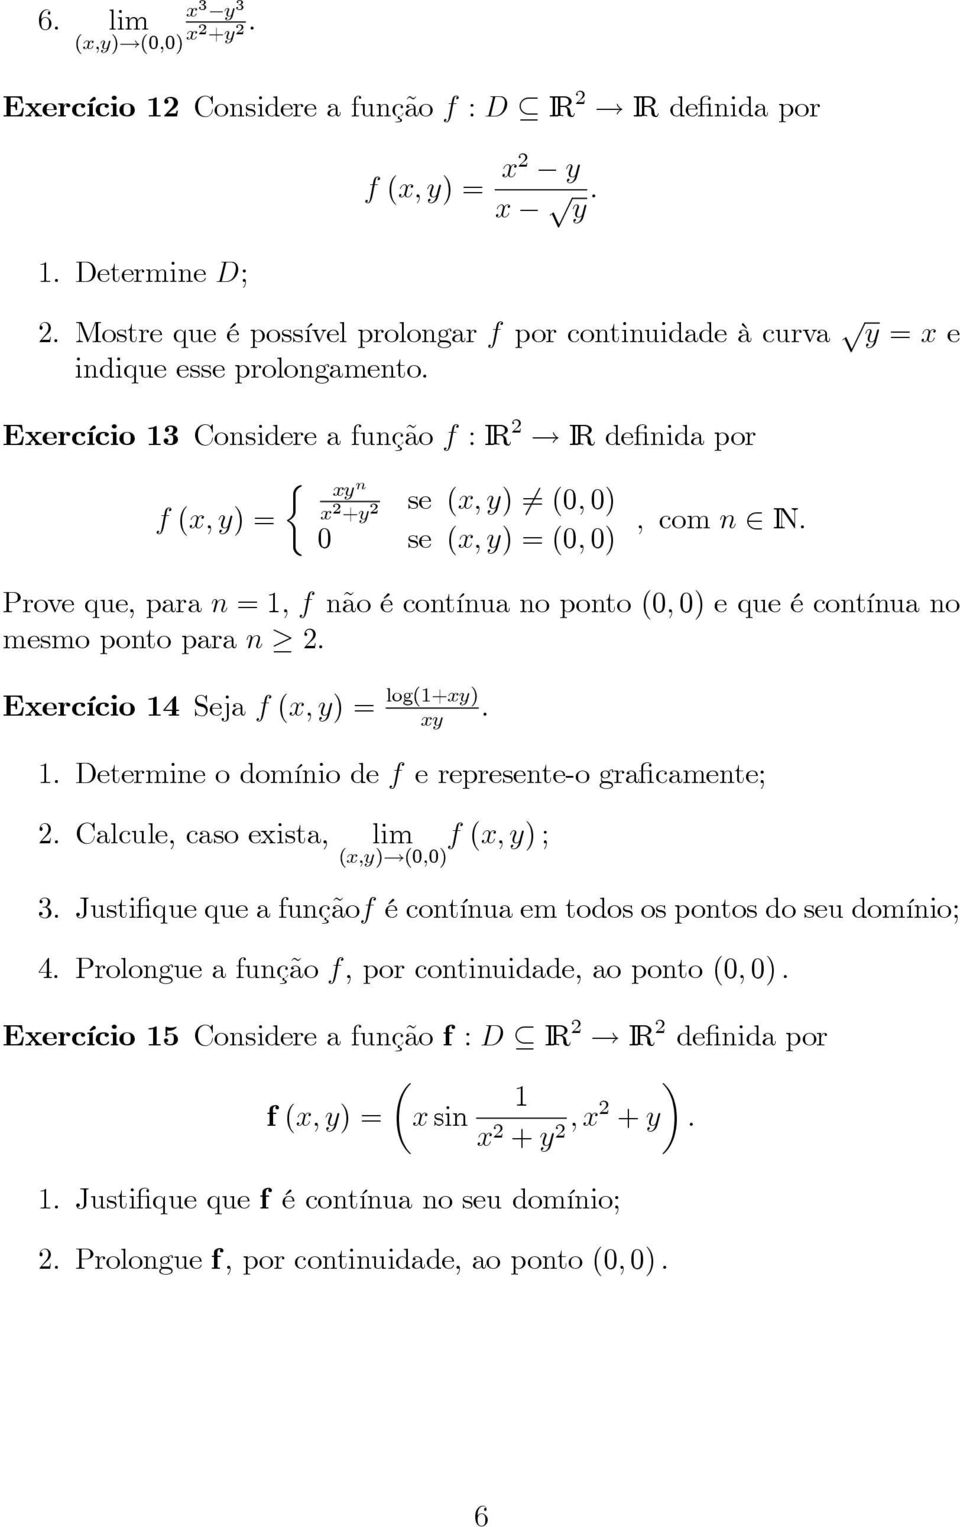 0 se (, ) =(0, 0) Prove que, para n =1,fnão é contínua no ponto (0, 0) equeécontínuano mesmo ponto para n 2. Eercício 14 Seja f (, ) = log(1+). 1. Determine o domínio de f e represente-o graficamente; 2.